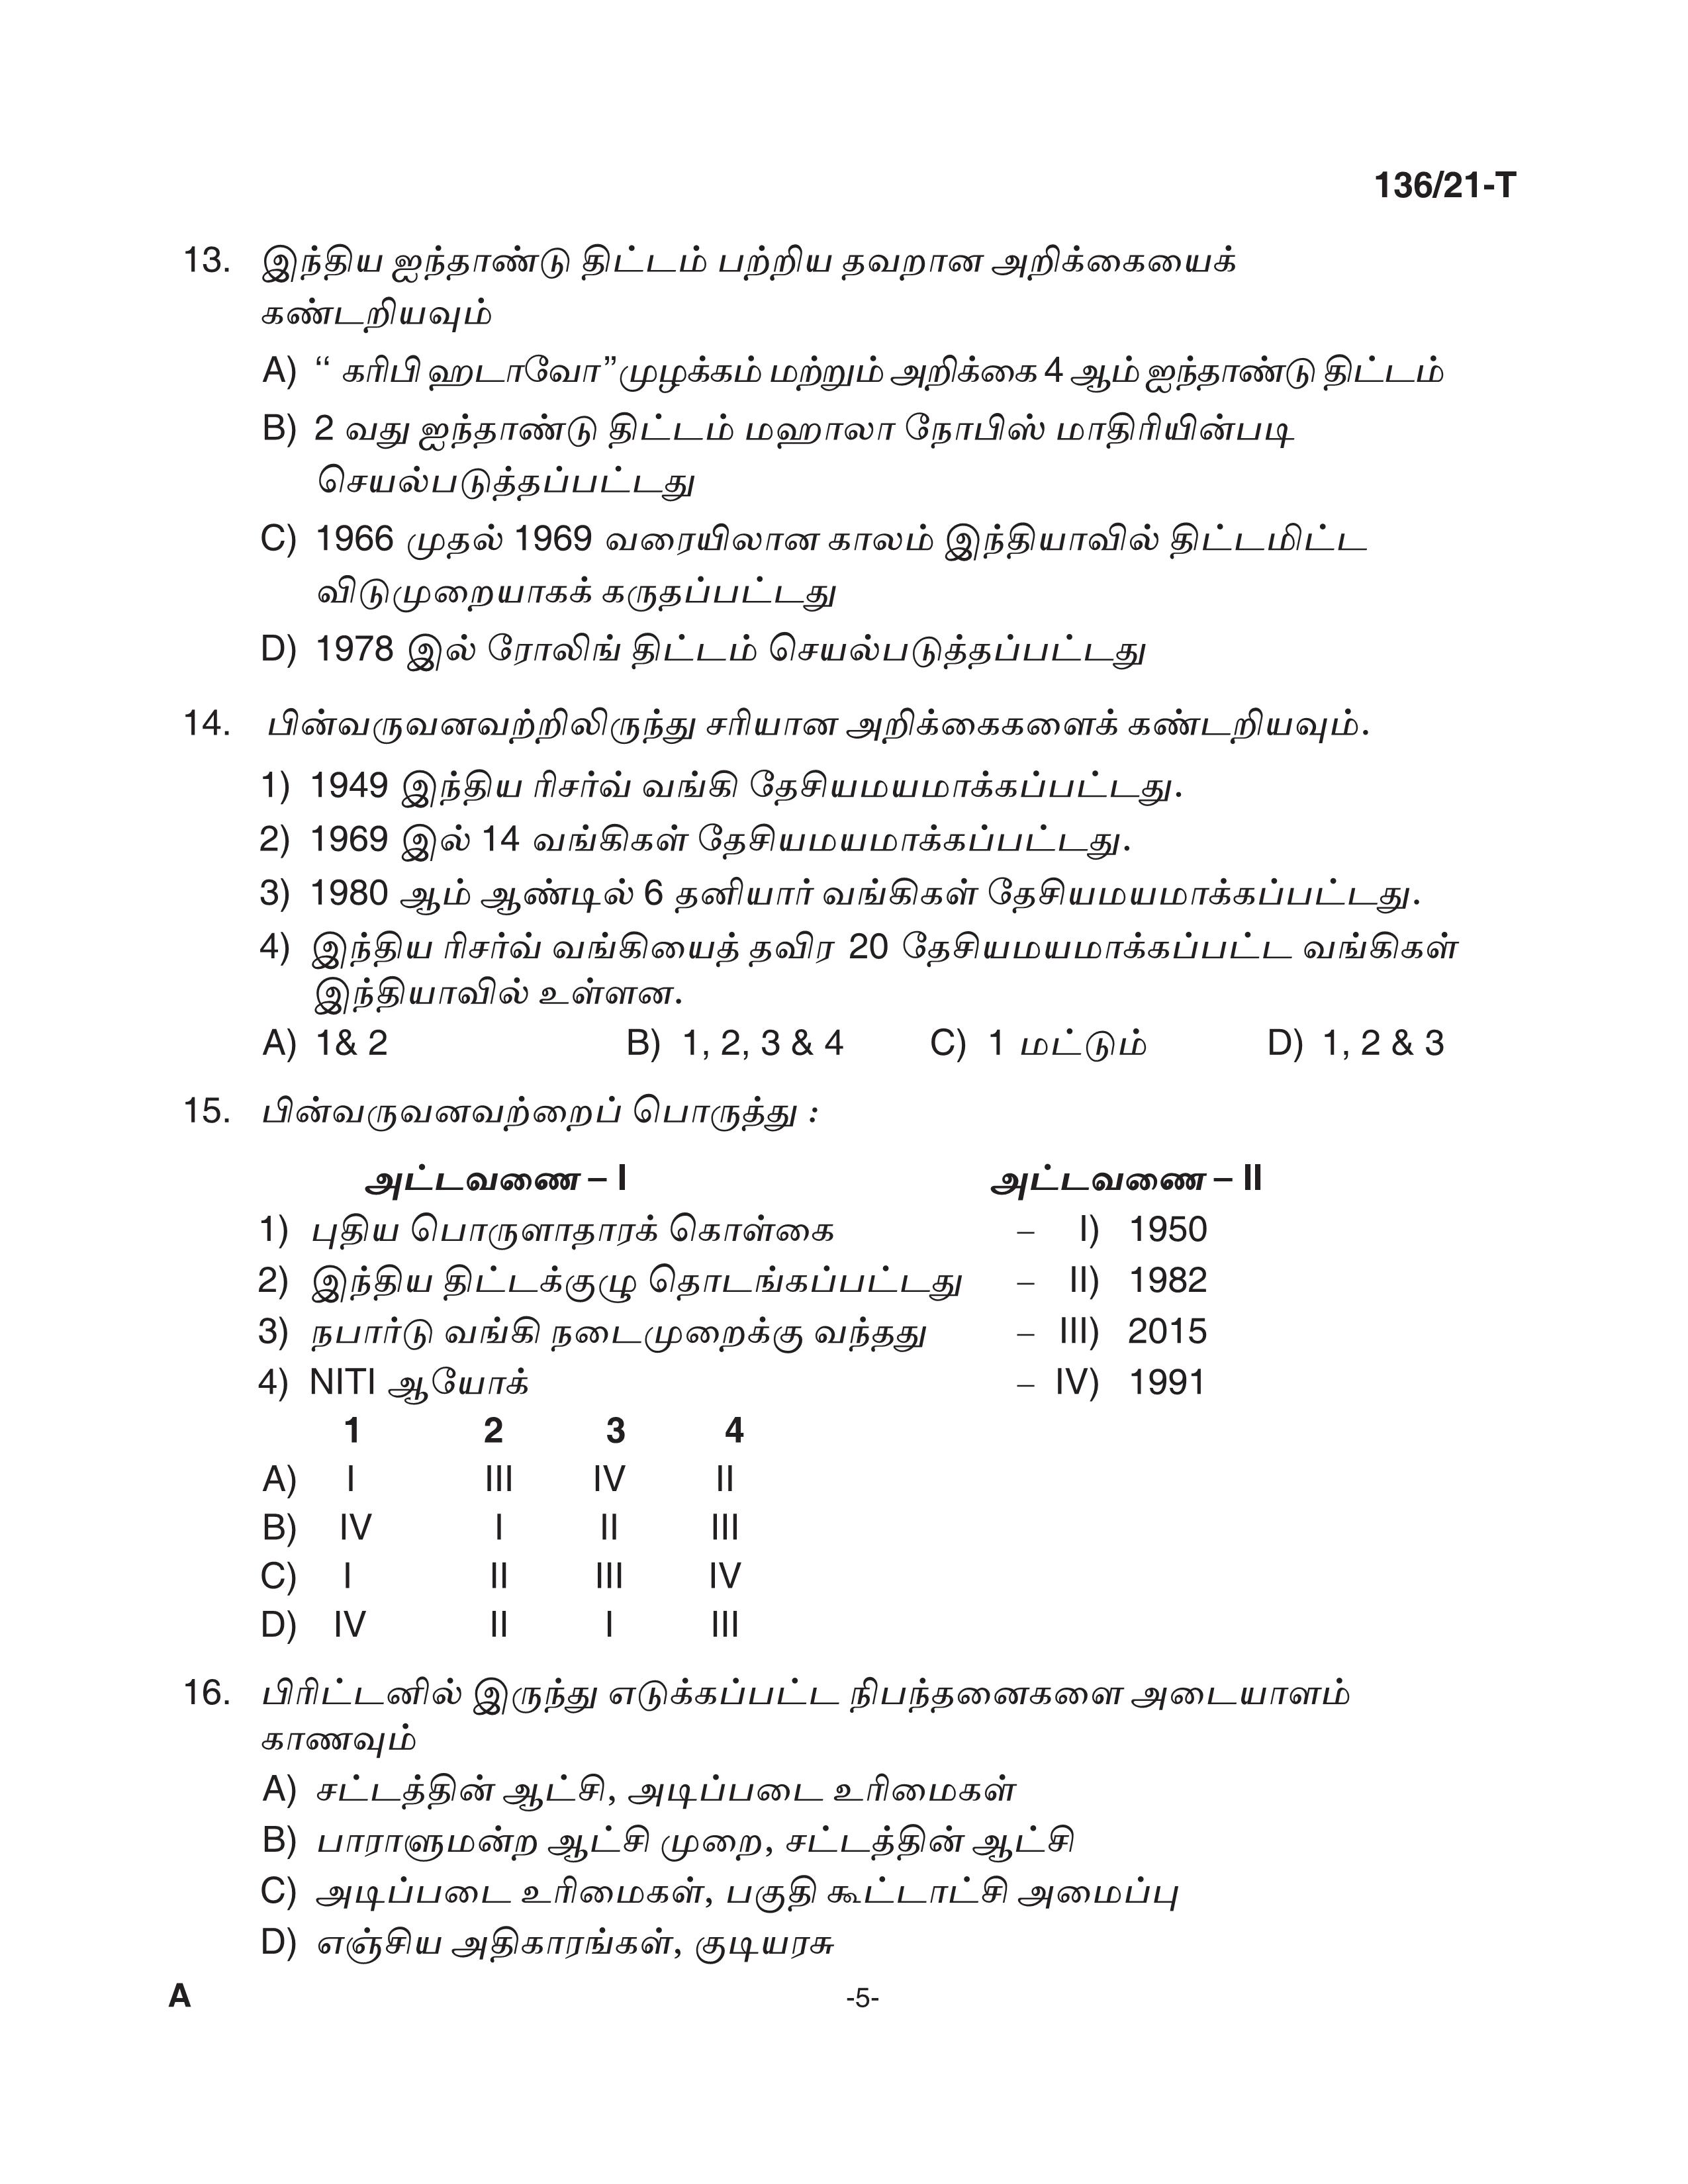 KPSC Village Extension Officer Tamil Exam 2021 Code 1362021 T 4